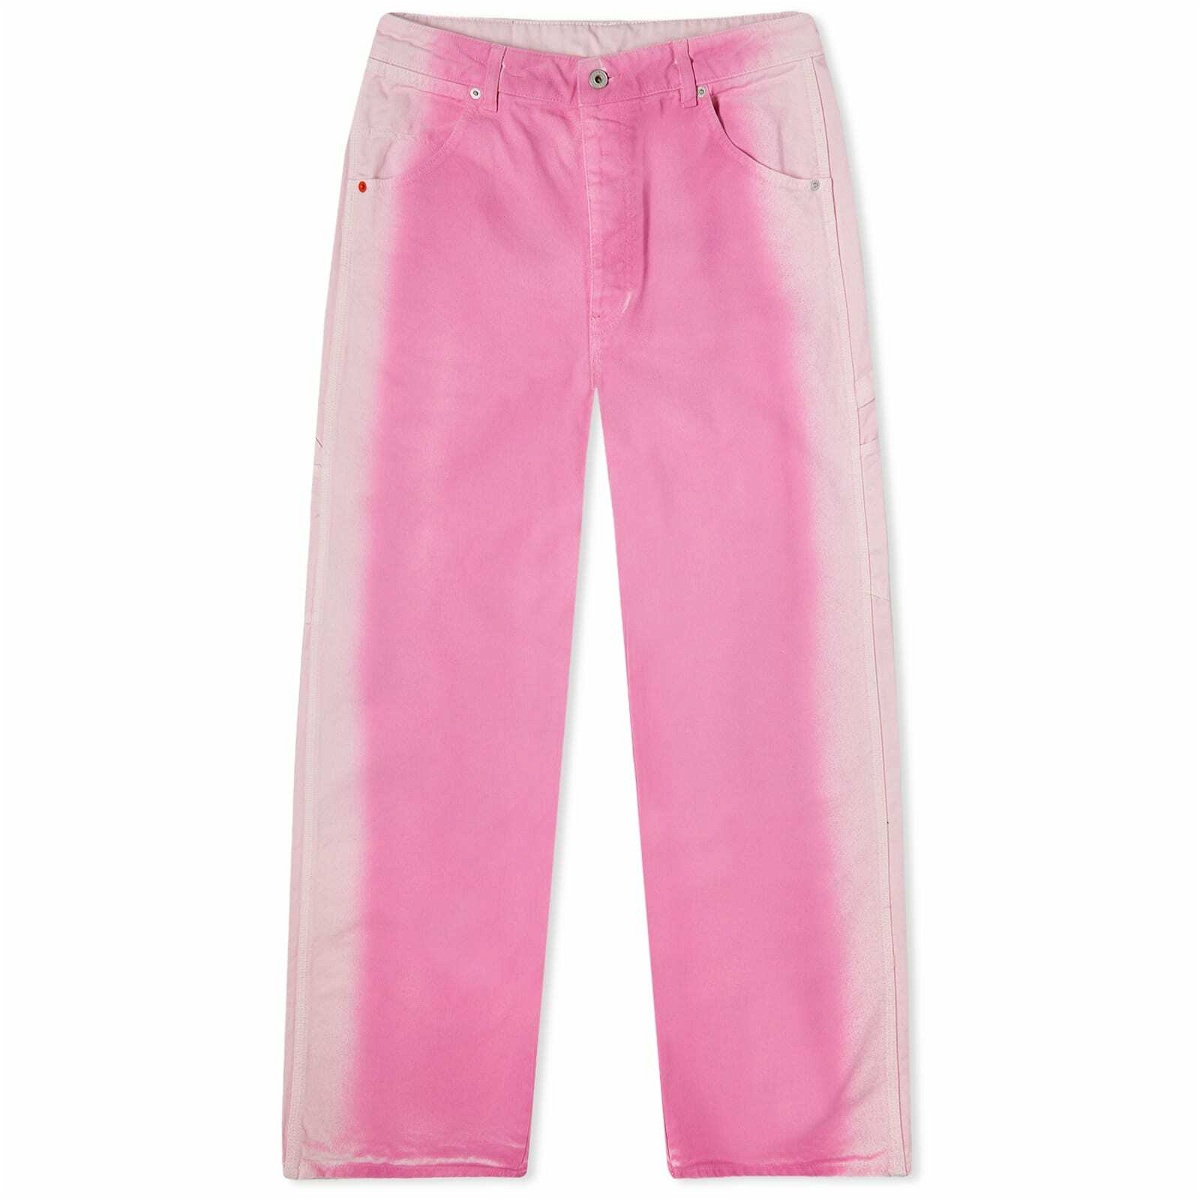 Heron Preston Women's Gradient Denim Carpenter Jeans in Pink Heron Preston